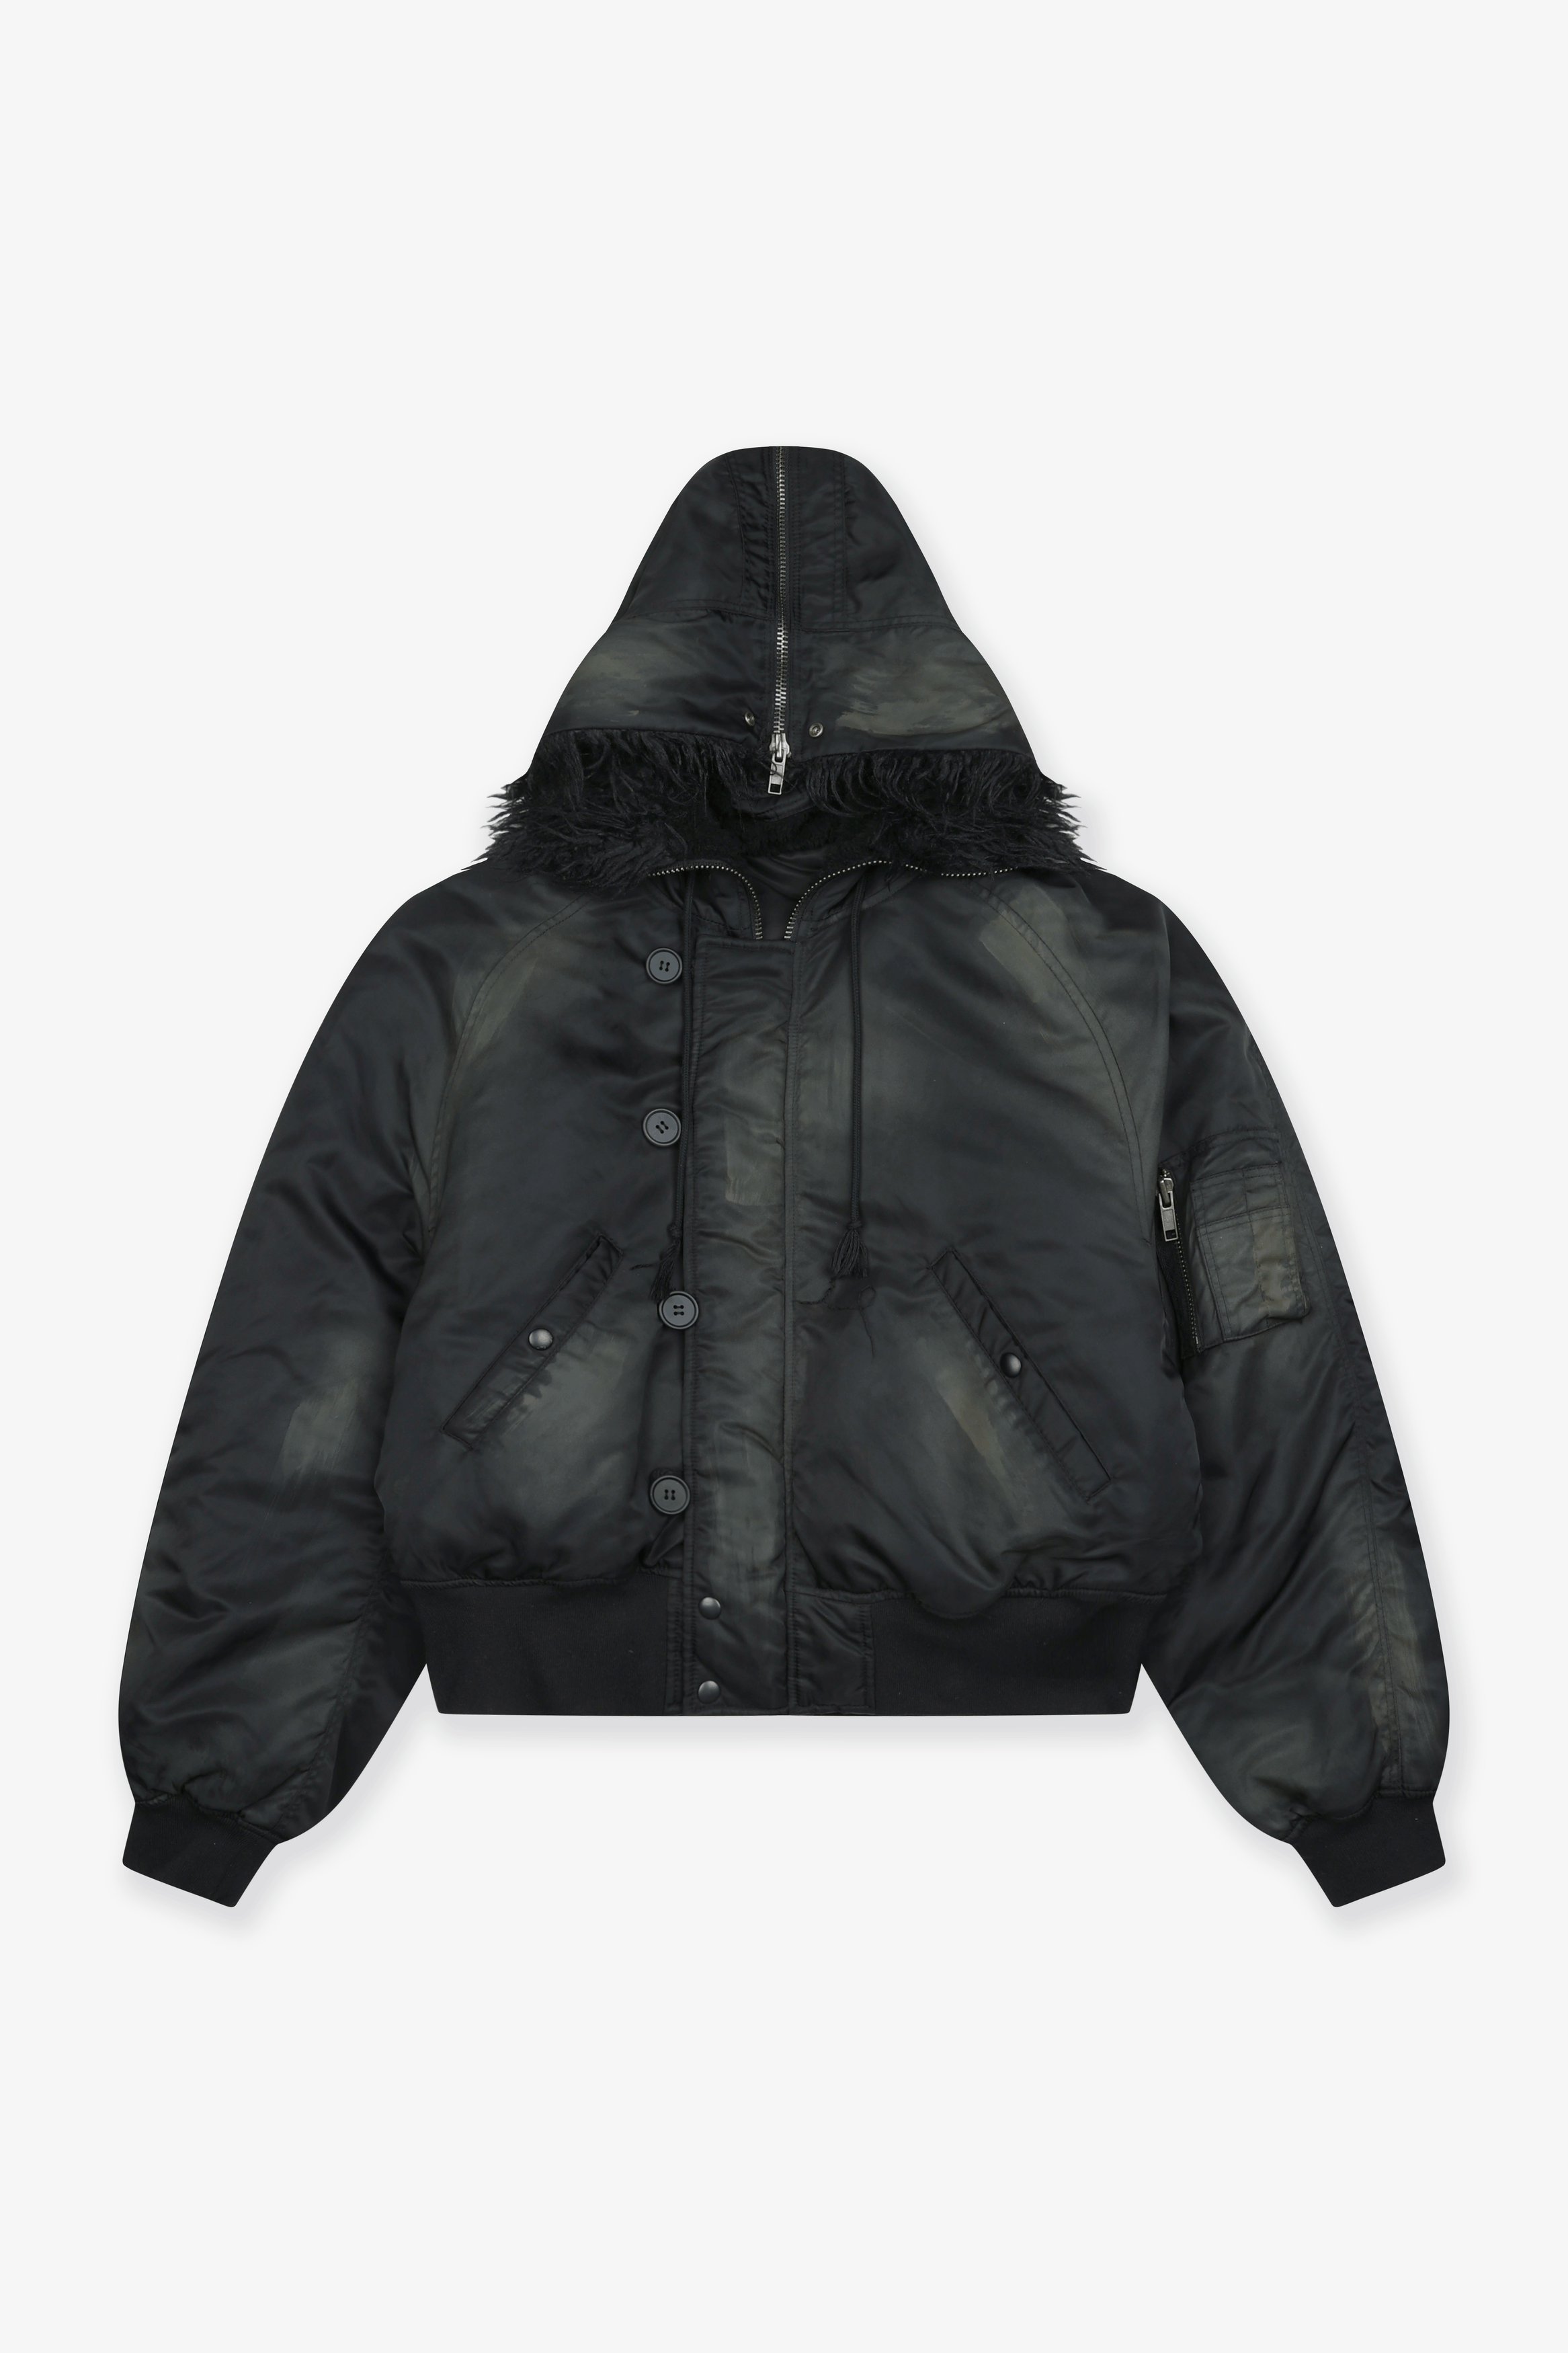 GRAILZ hooded windbreaker jacket 3-